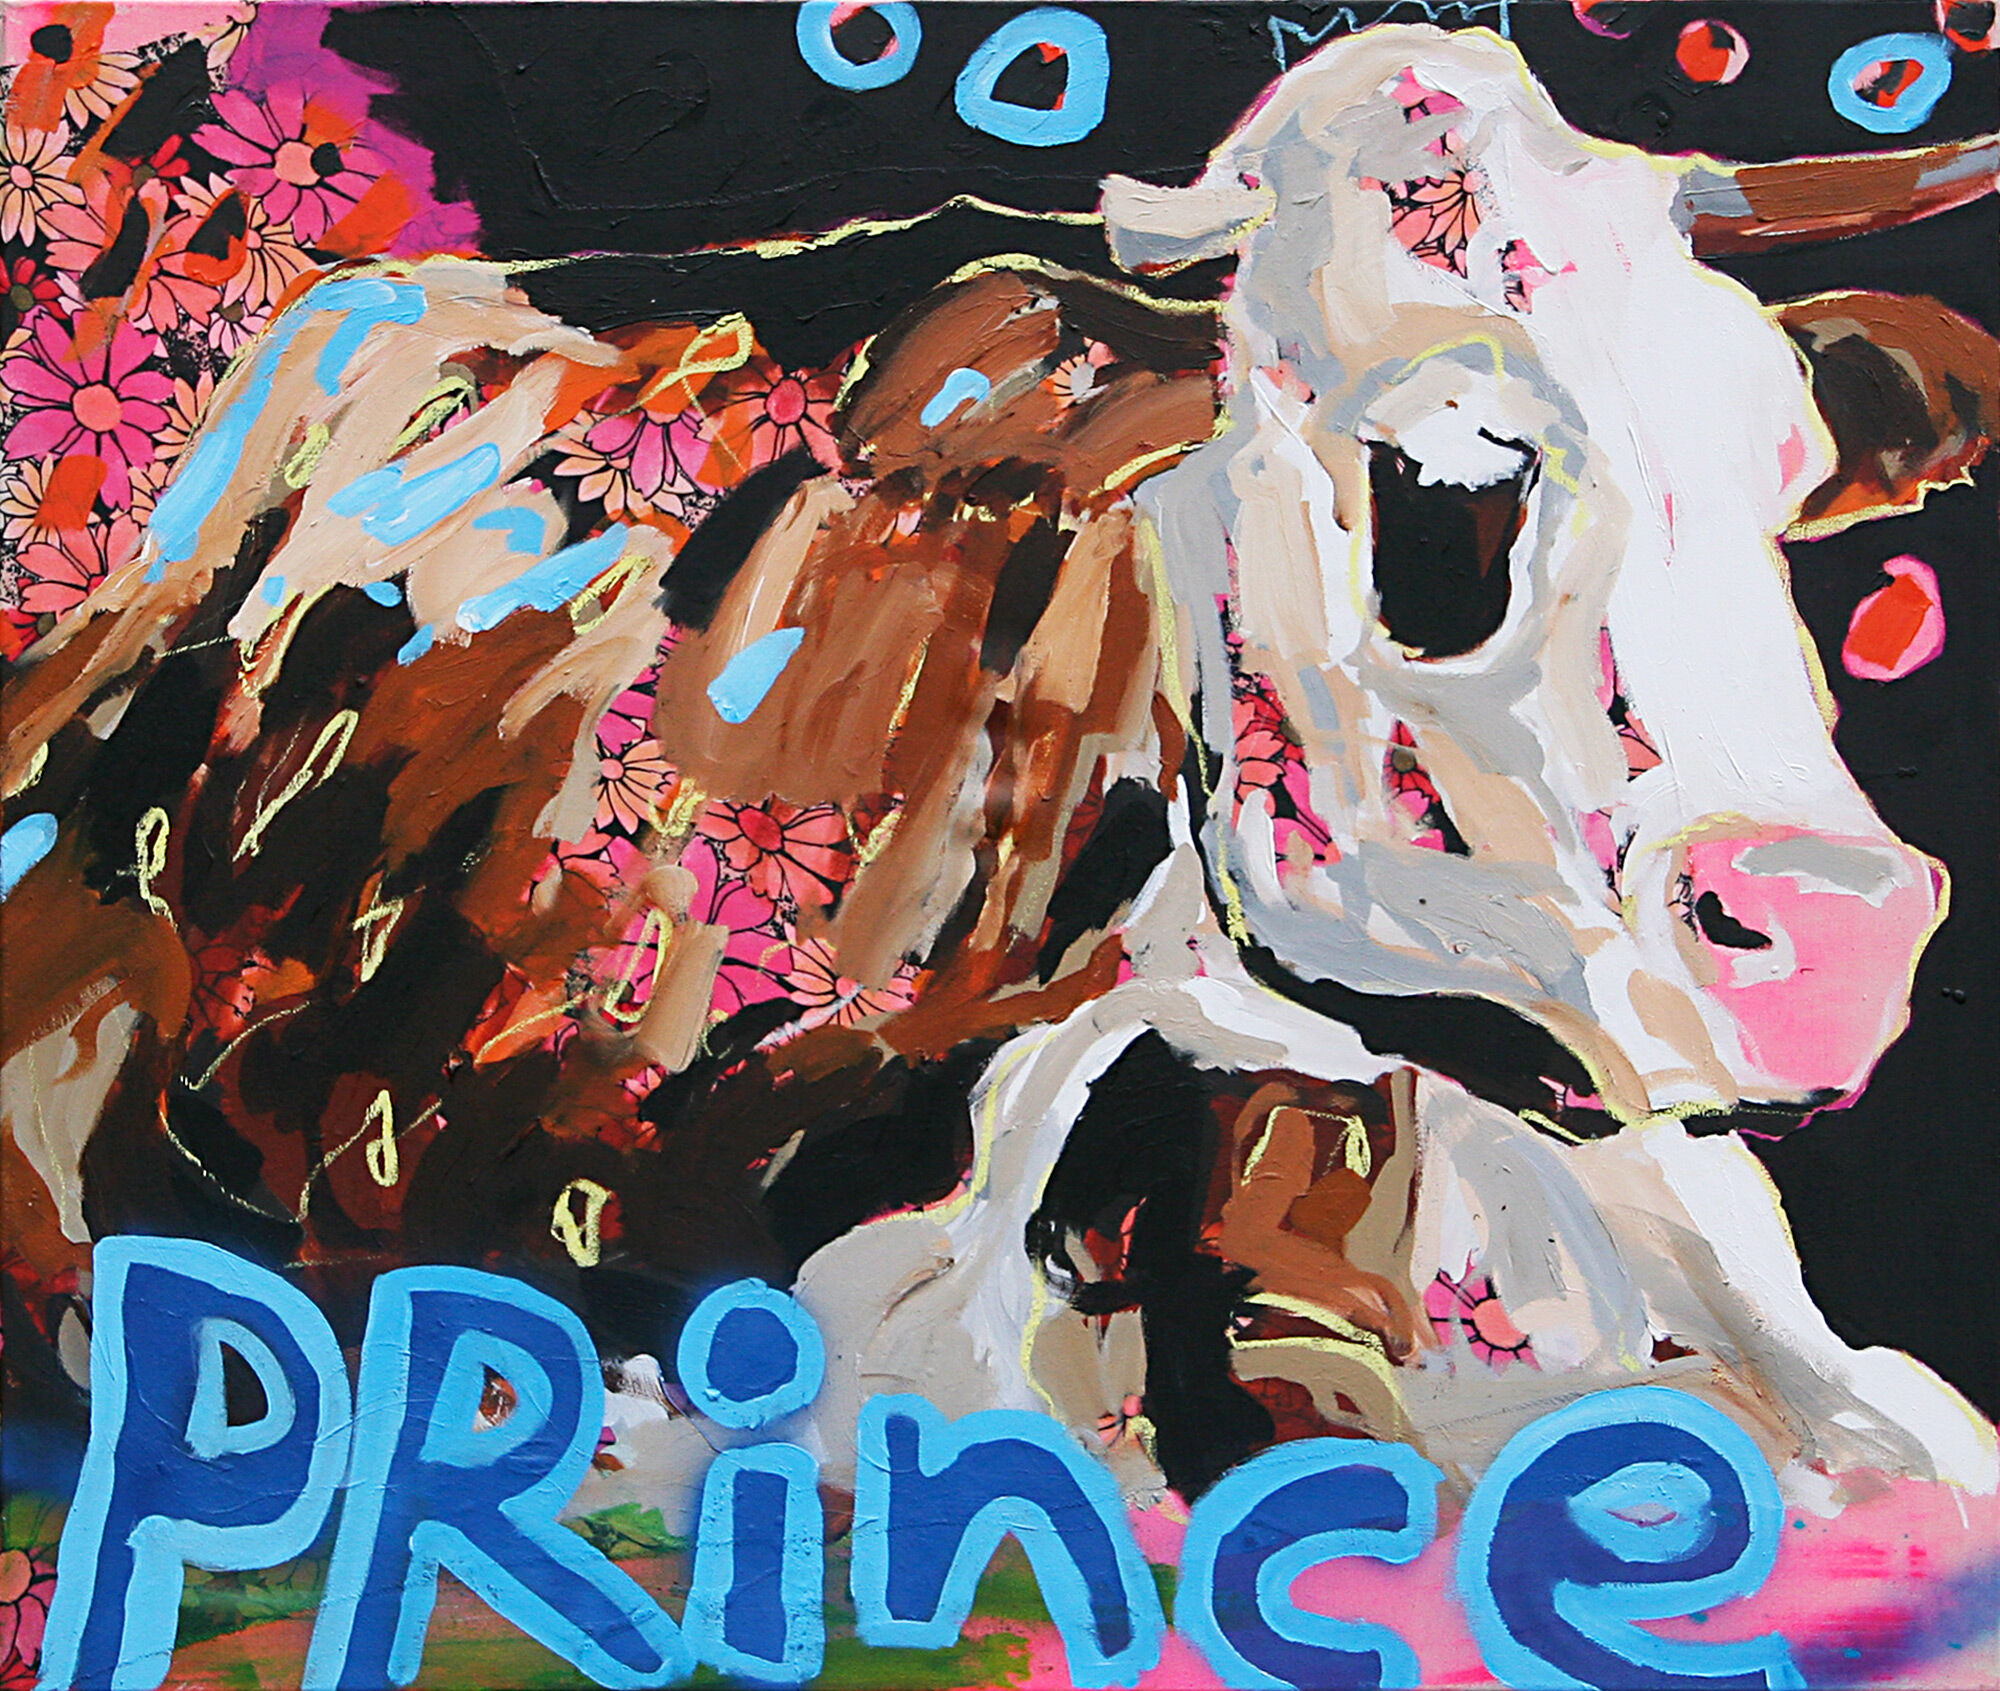 Billede "Prince" (2020) (Unikt værk) von Stephan Geisler